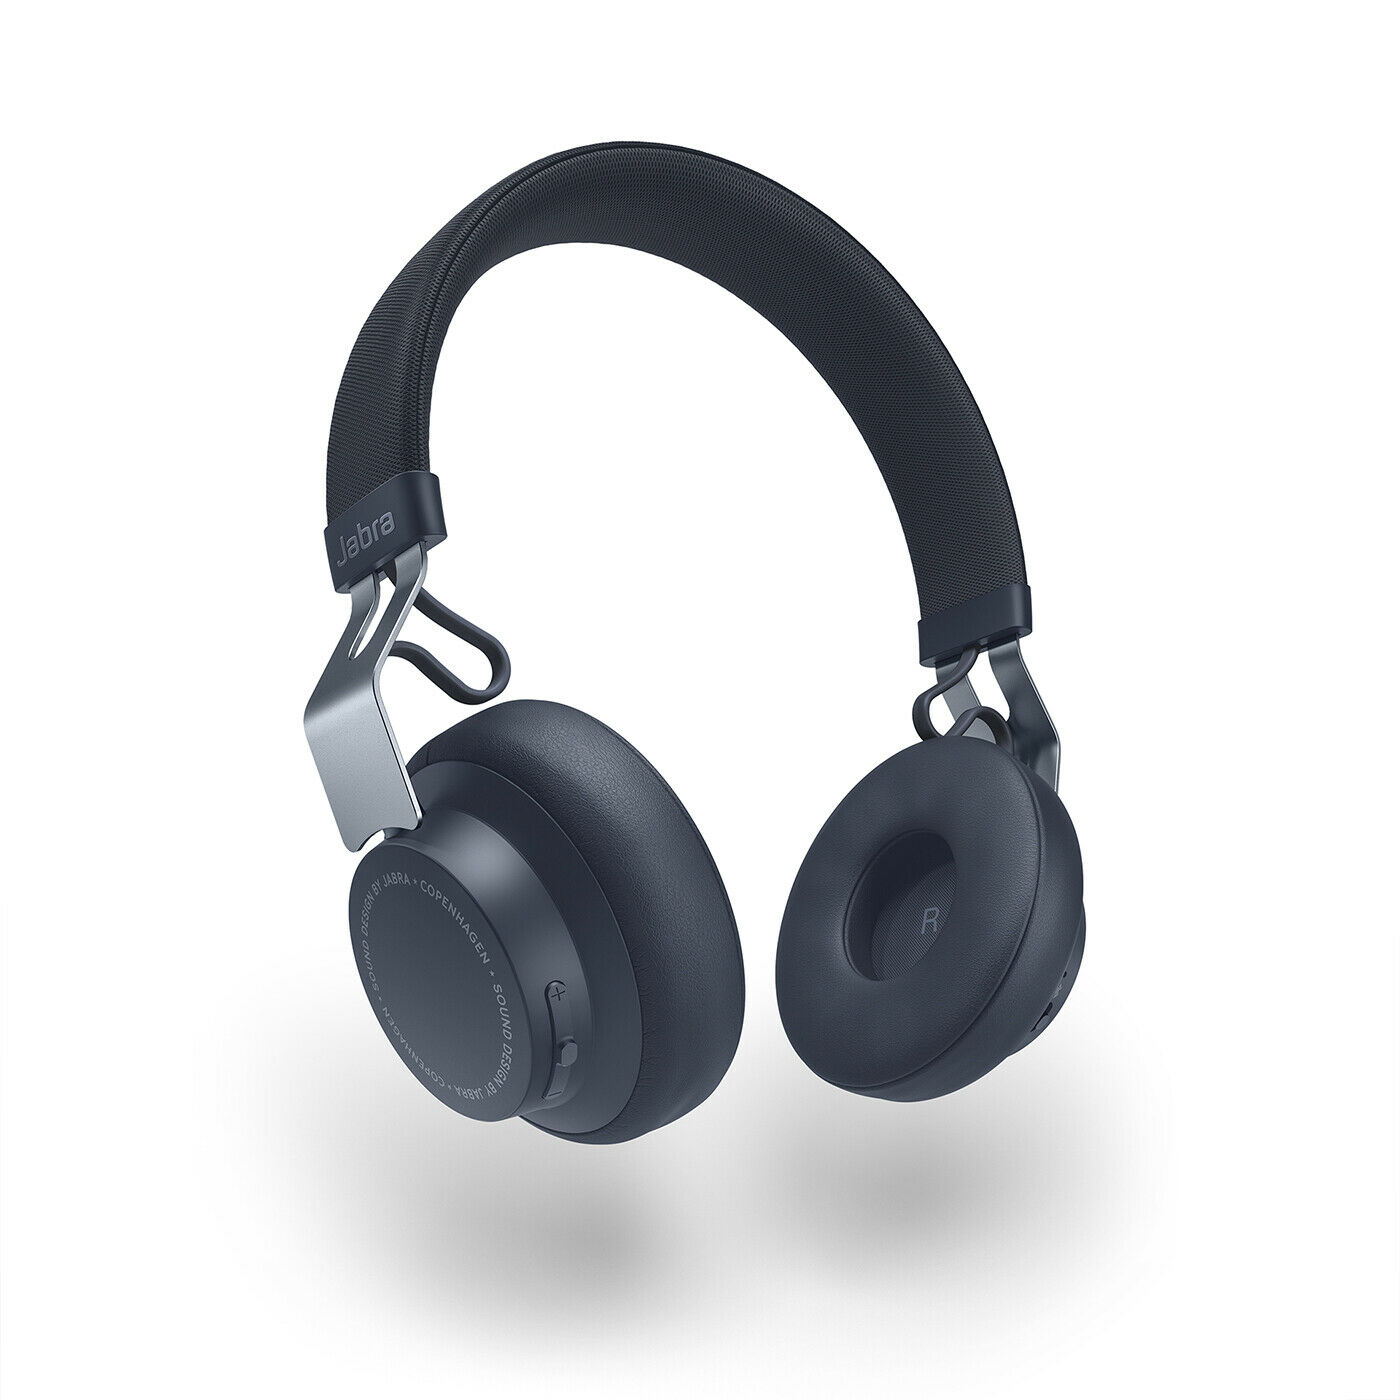 Bild zu Kabellose Kopfhörer Jabra Move Style Edition für 38,69€ (Vergleich: 66,80€)